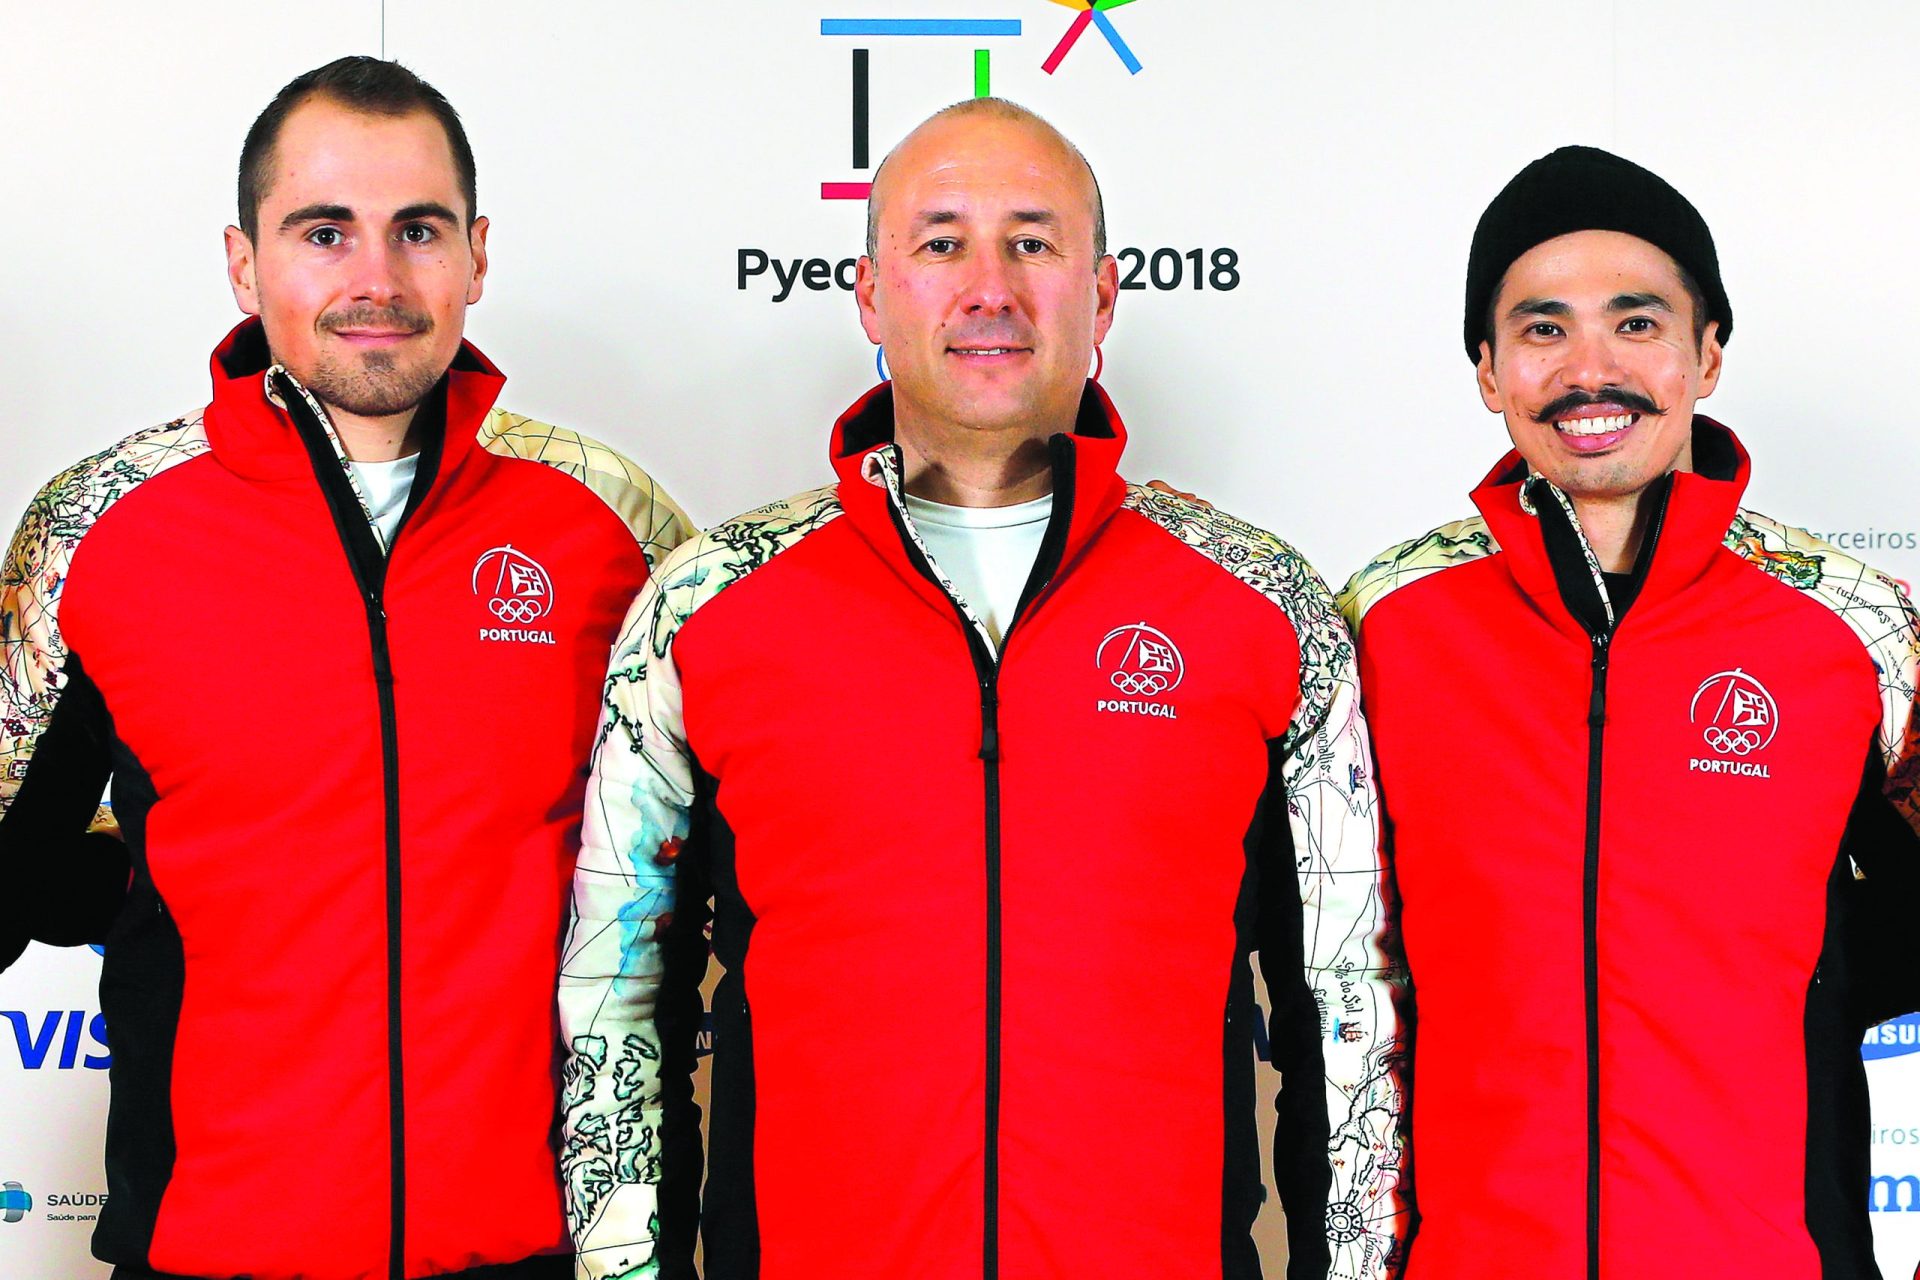 PyeongChang 2018. Portugal com dois representantes nos Jogos Olímpicos de Inverno